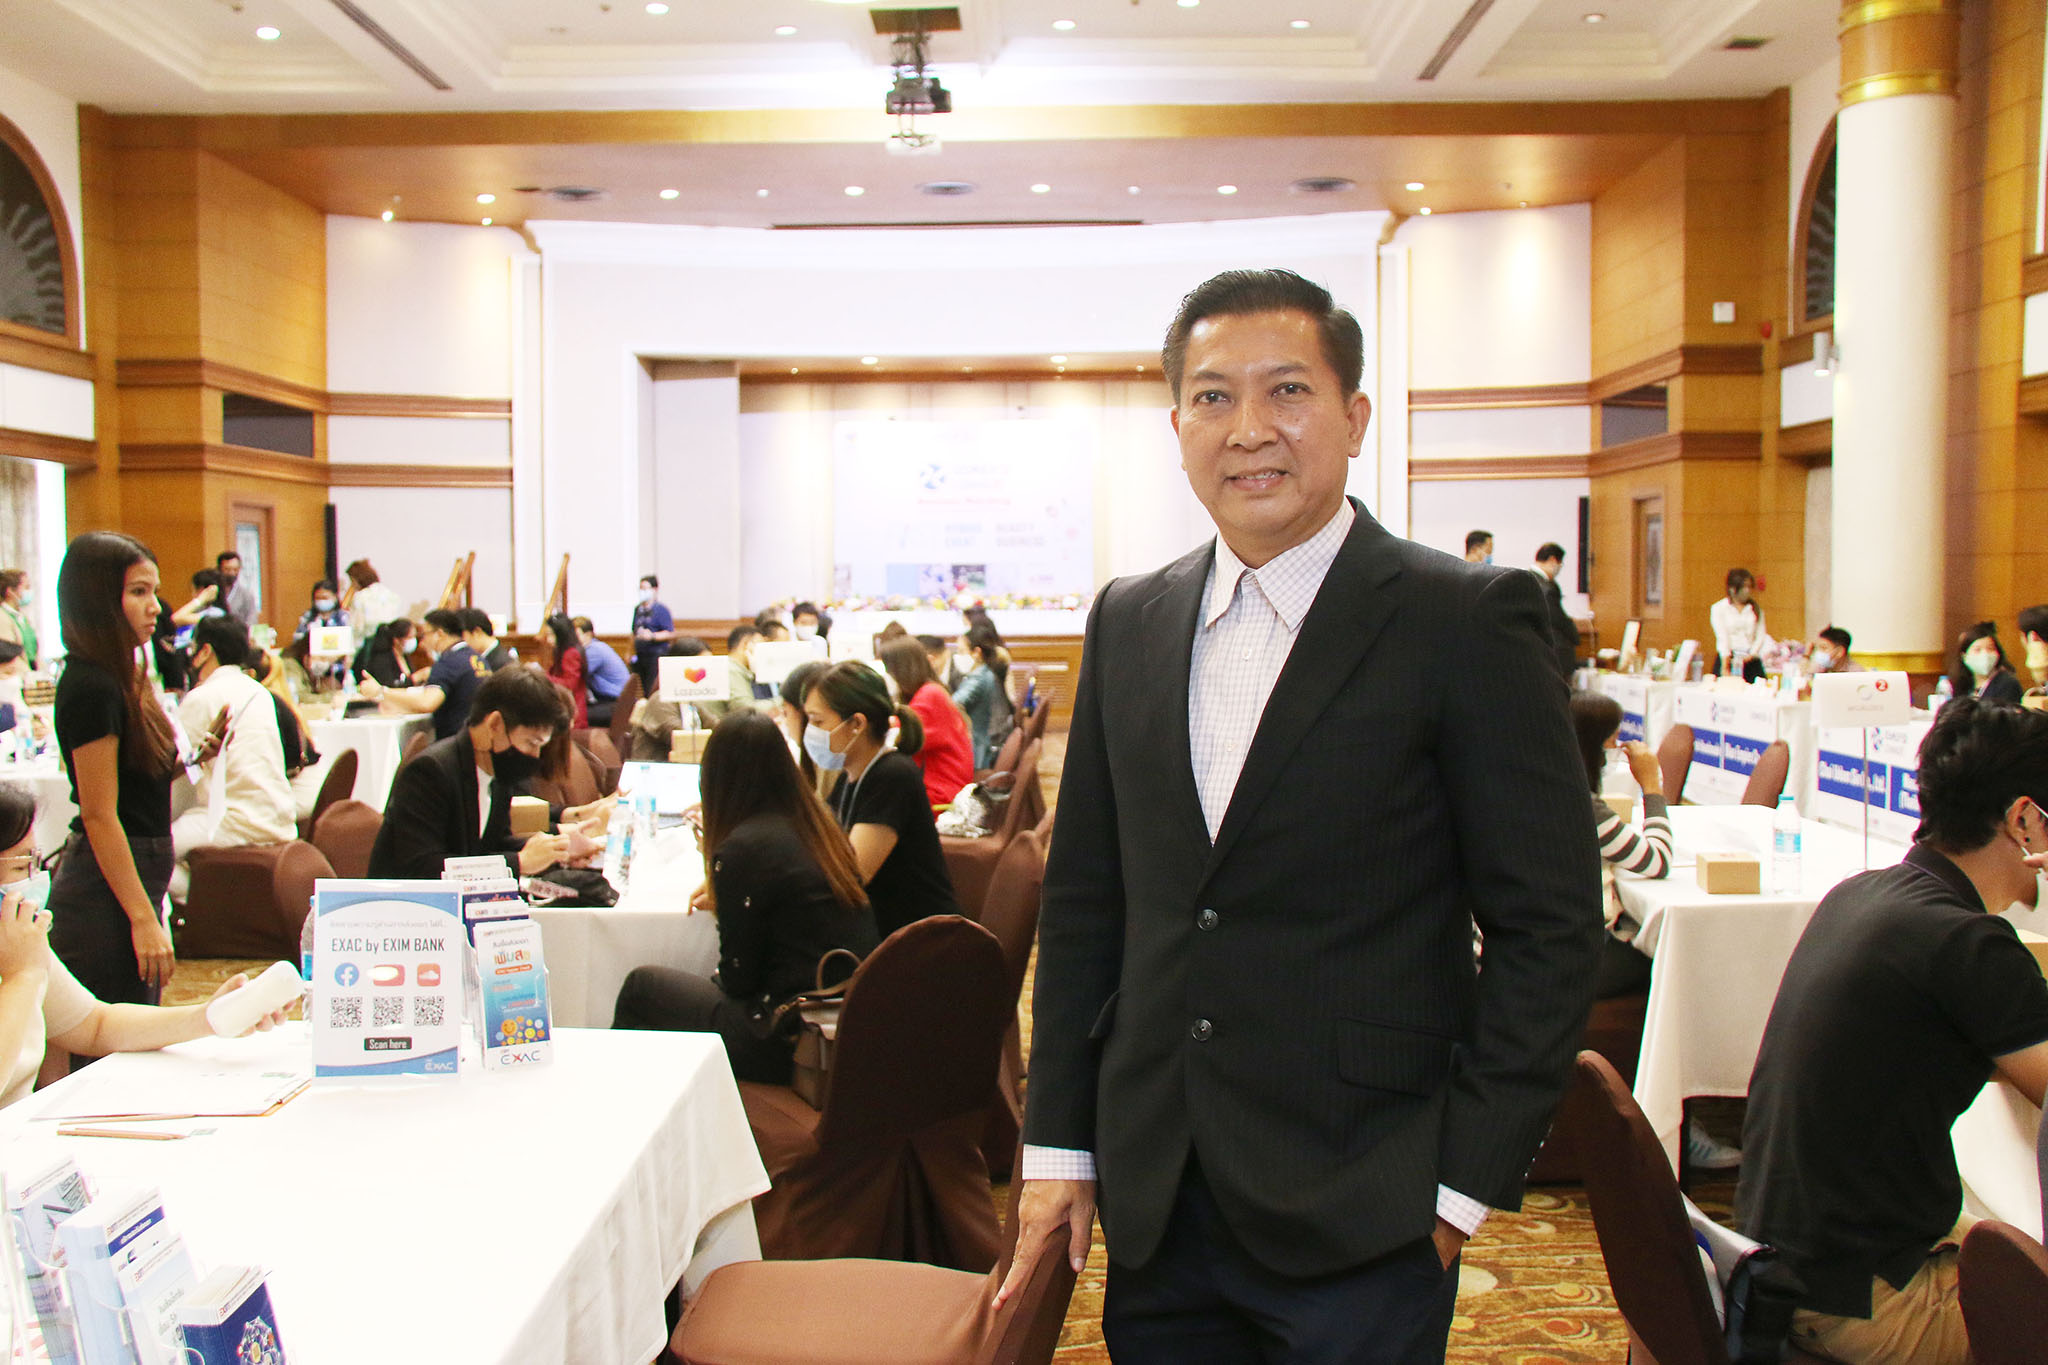 สสว. จับมือ สภาอุตสาหกรรมฯ และ อินฟอร์มา มาร์เก็ต จัดกิจกรรม Hybrid Event เพื่อธุรกิจความงามเต็มรูปแบบครั้งแรกในประเทศไทย